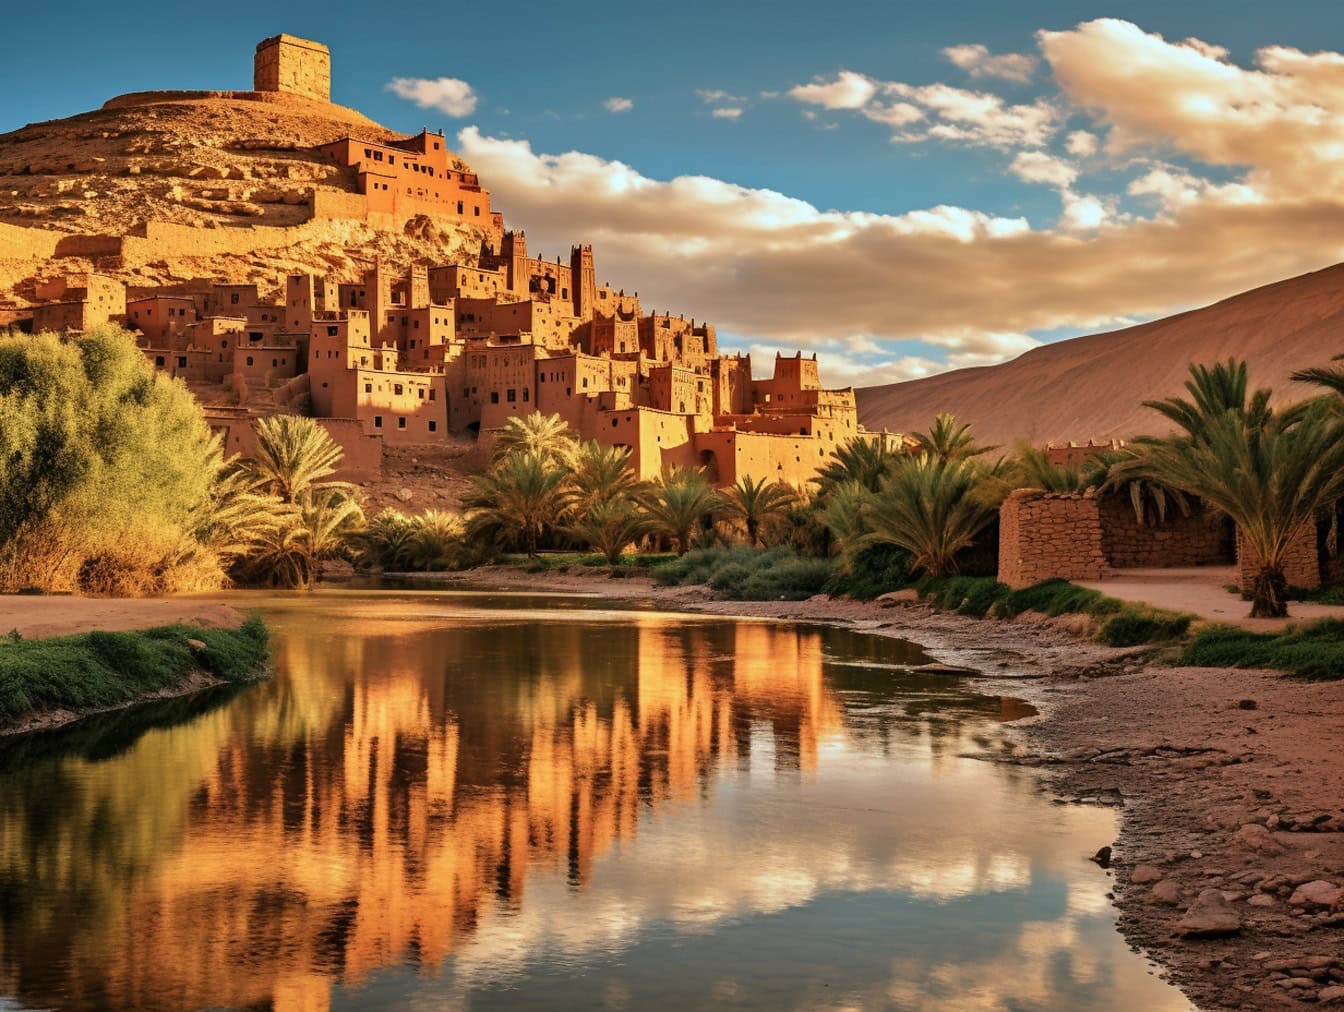 Paysage urbain d’Ait Benhaddou au Maroc, une célèbre ville médiévale de style architectural africain traditionnel avec une oasis avec des palmiers